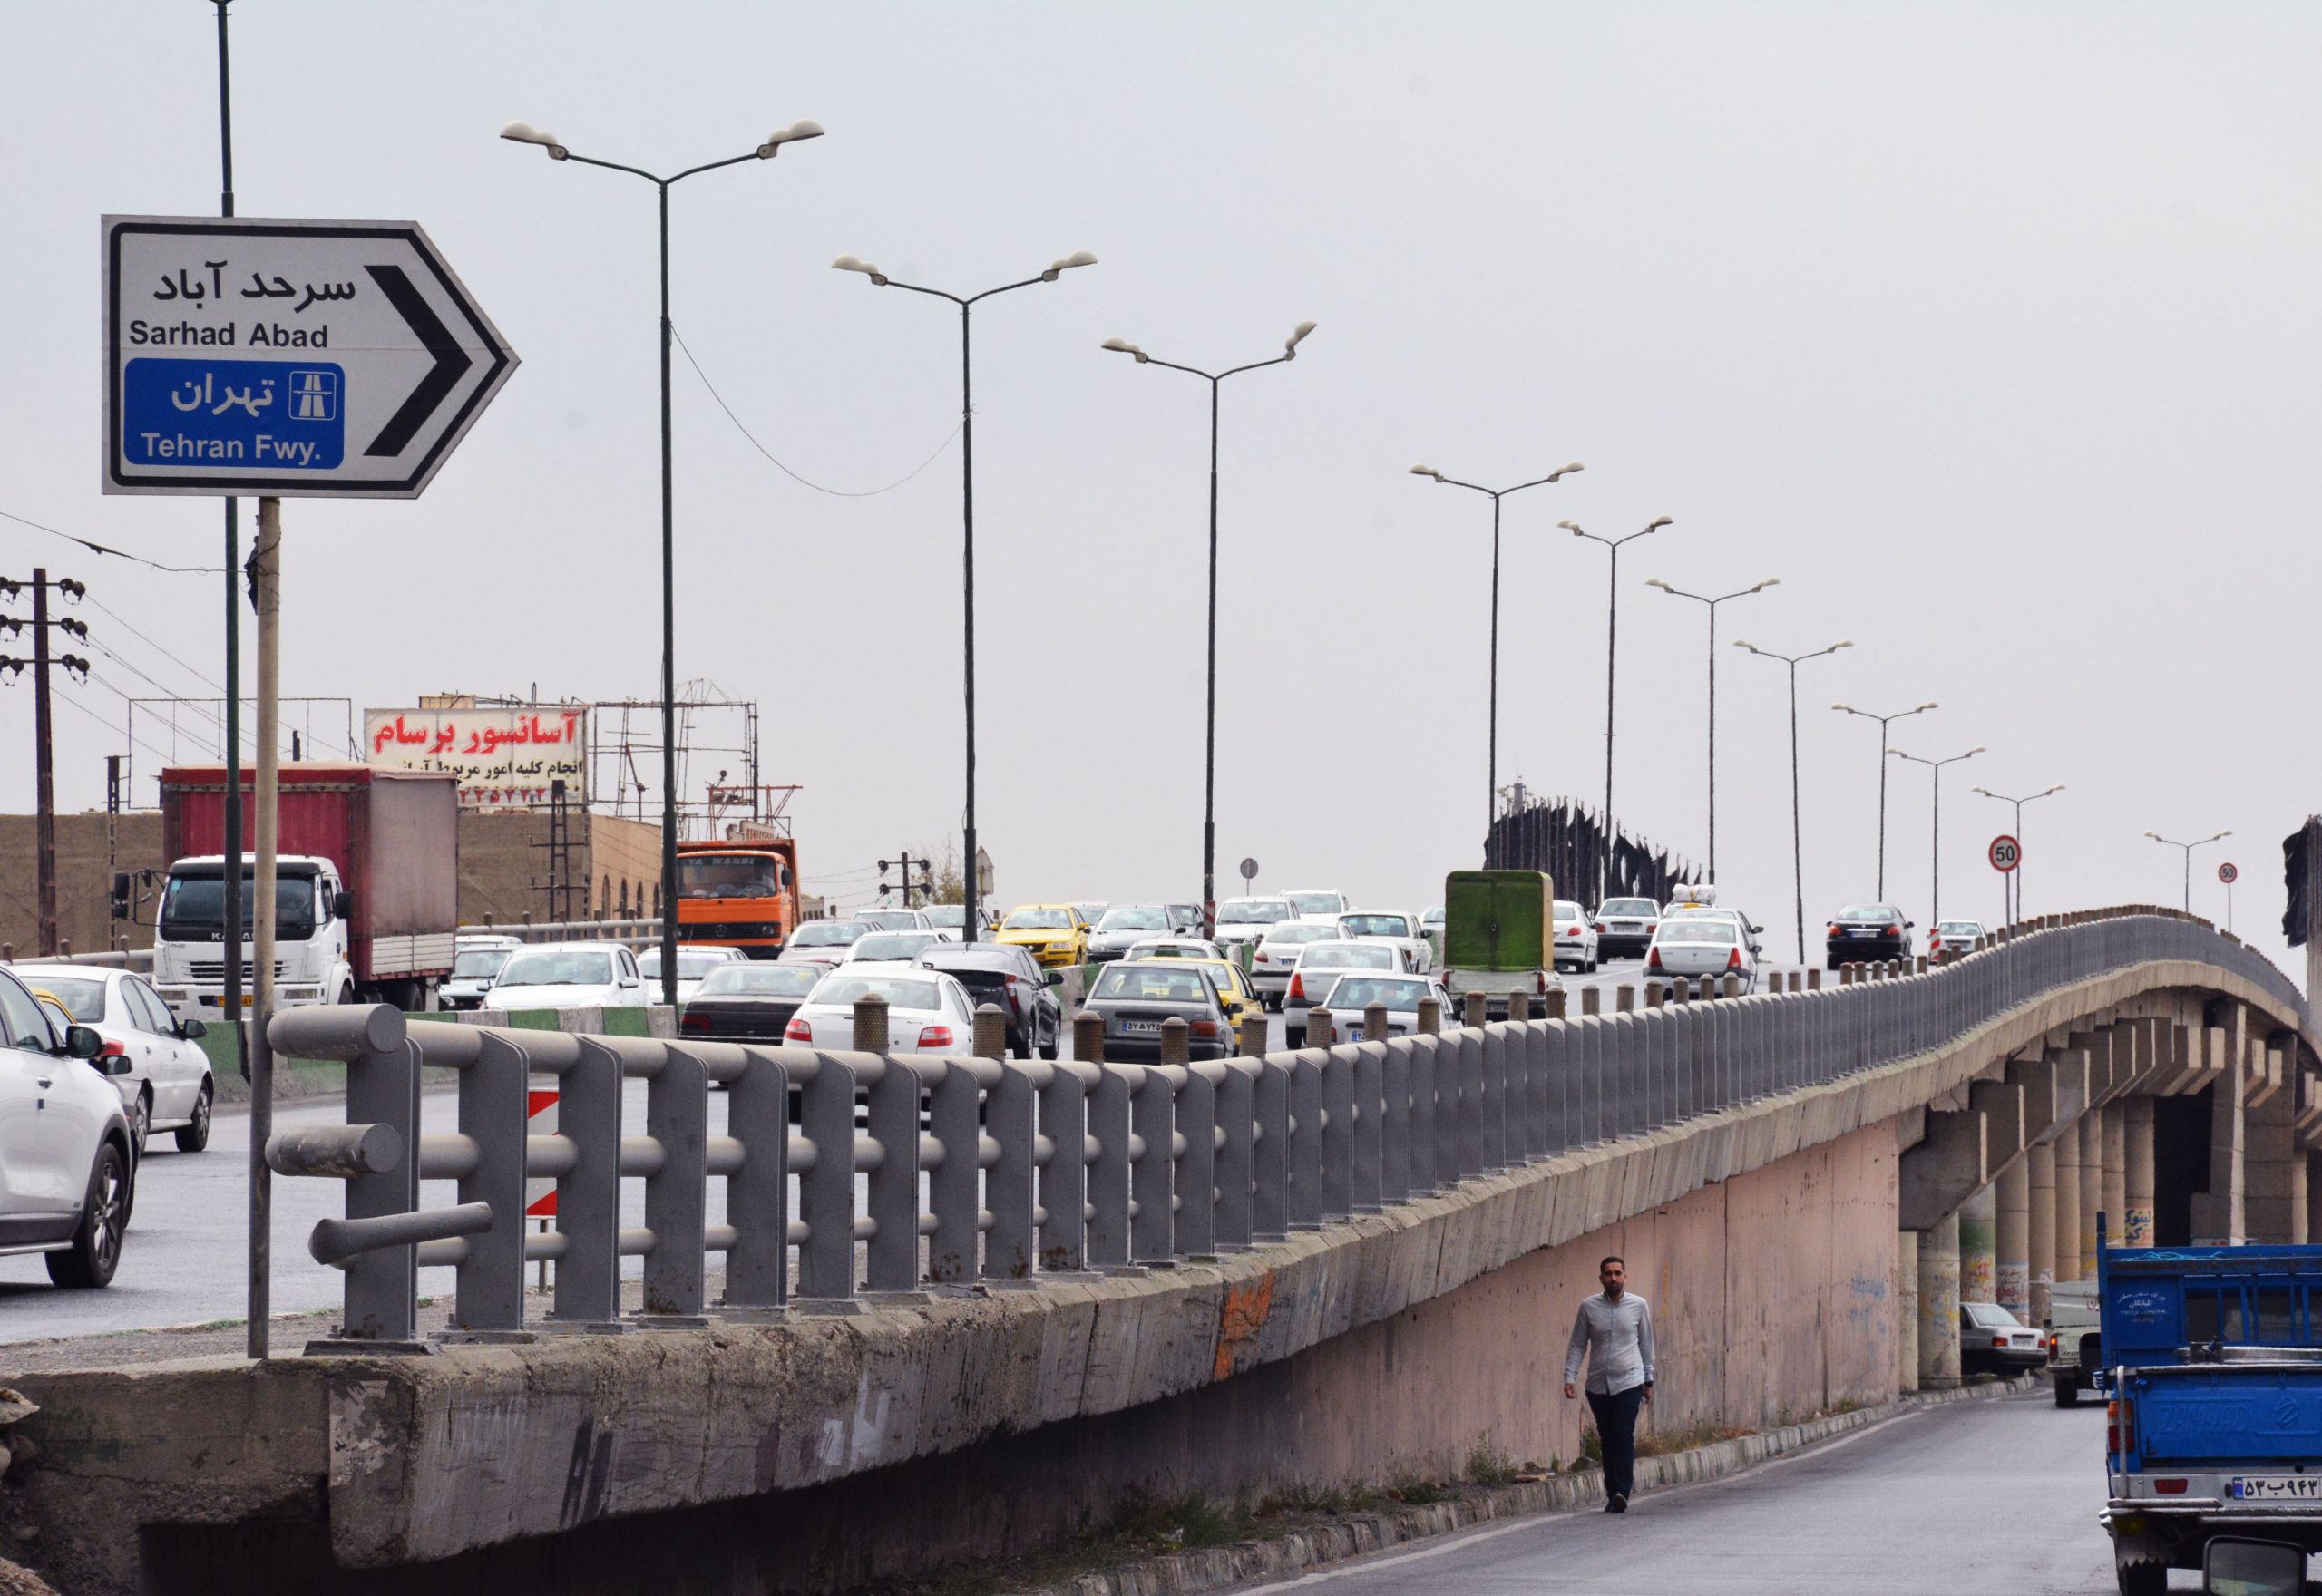 زیرگذر پل سرحدآباد در مرحله بتن ریزی دیوارهای حائل است/ پیشرفت پروژه در گرو رعایت استانداردها و تائیده راه آهن سراسری